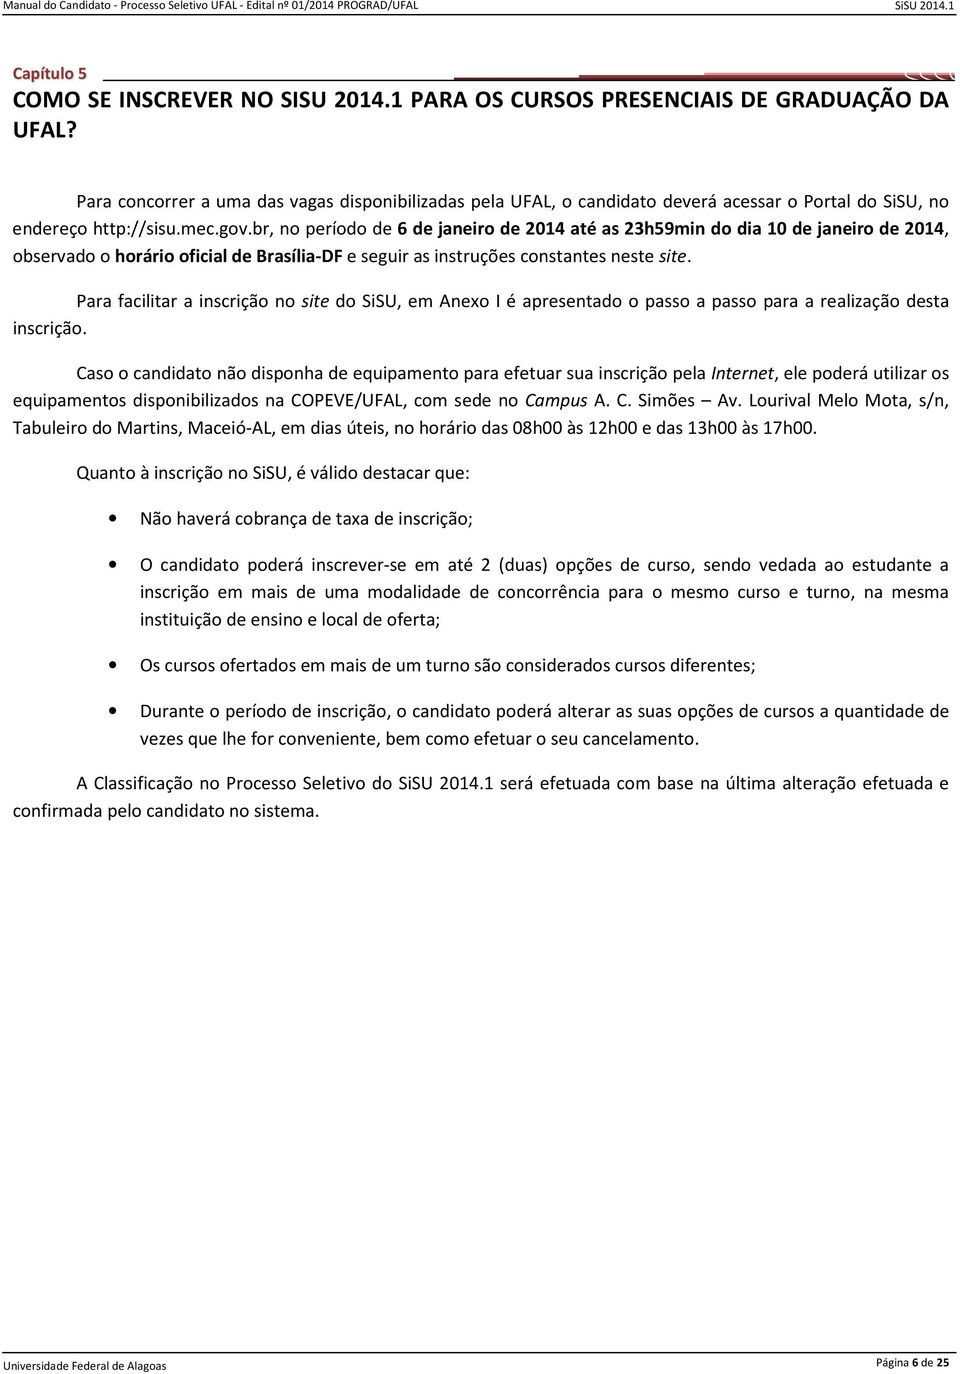 br, no período de 6 de janeiro de 2014 até as 23h59min do dia 10 de janeiro de 2014, observado o horário oficial de Brasília-DF e seguir as instruções constantes neste site.